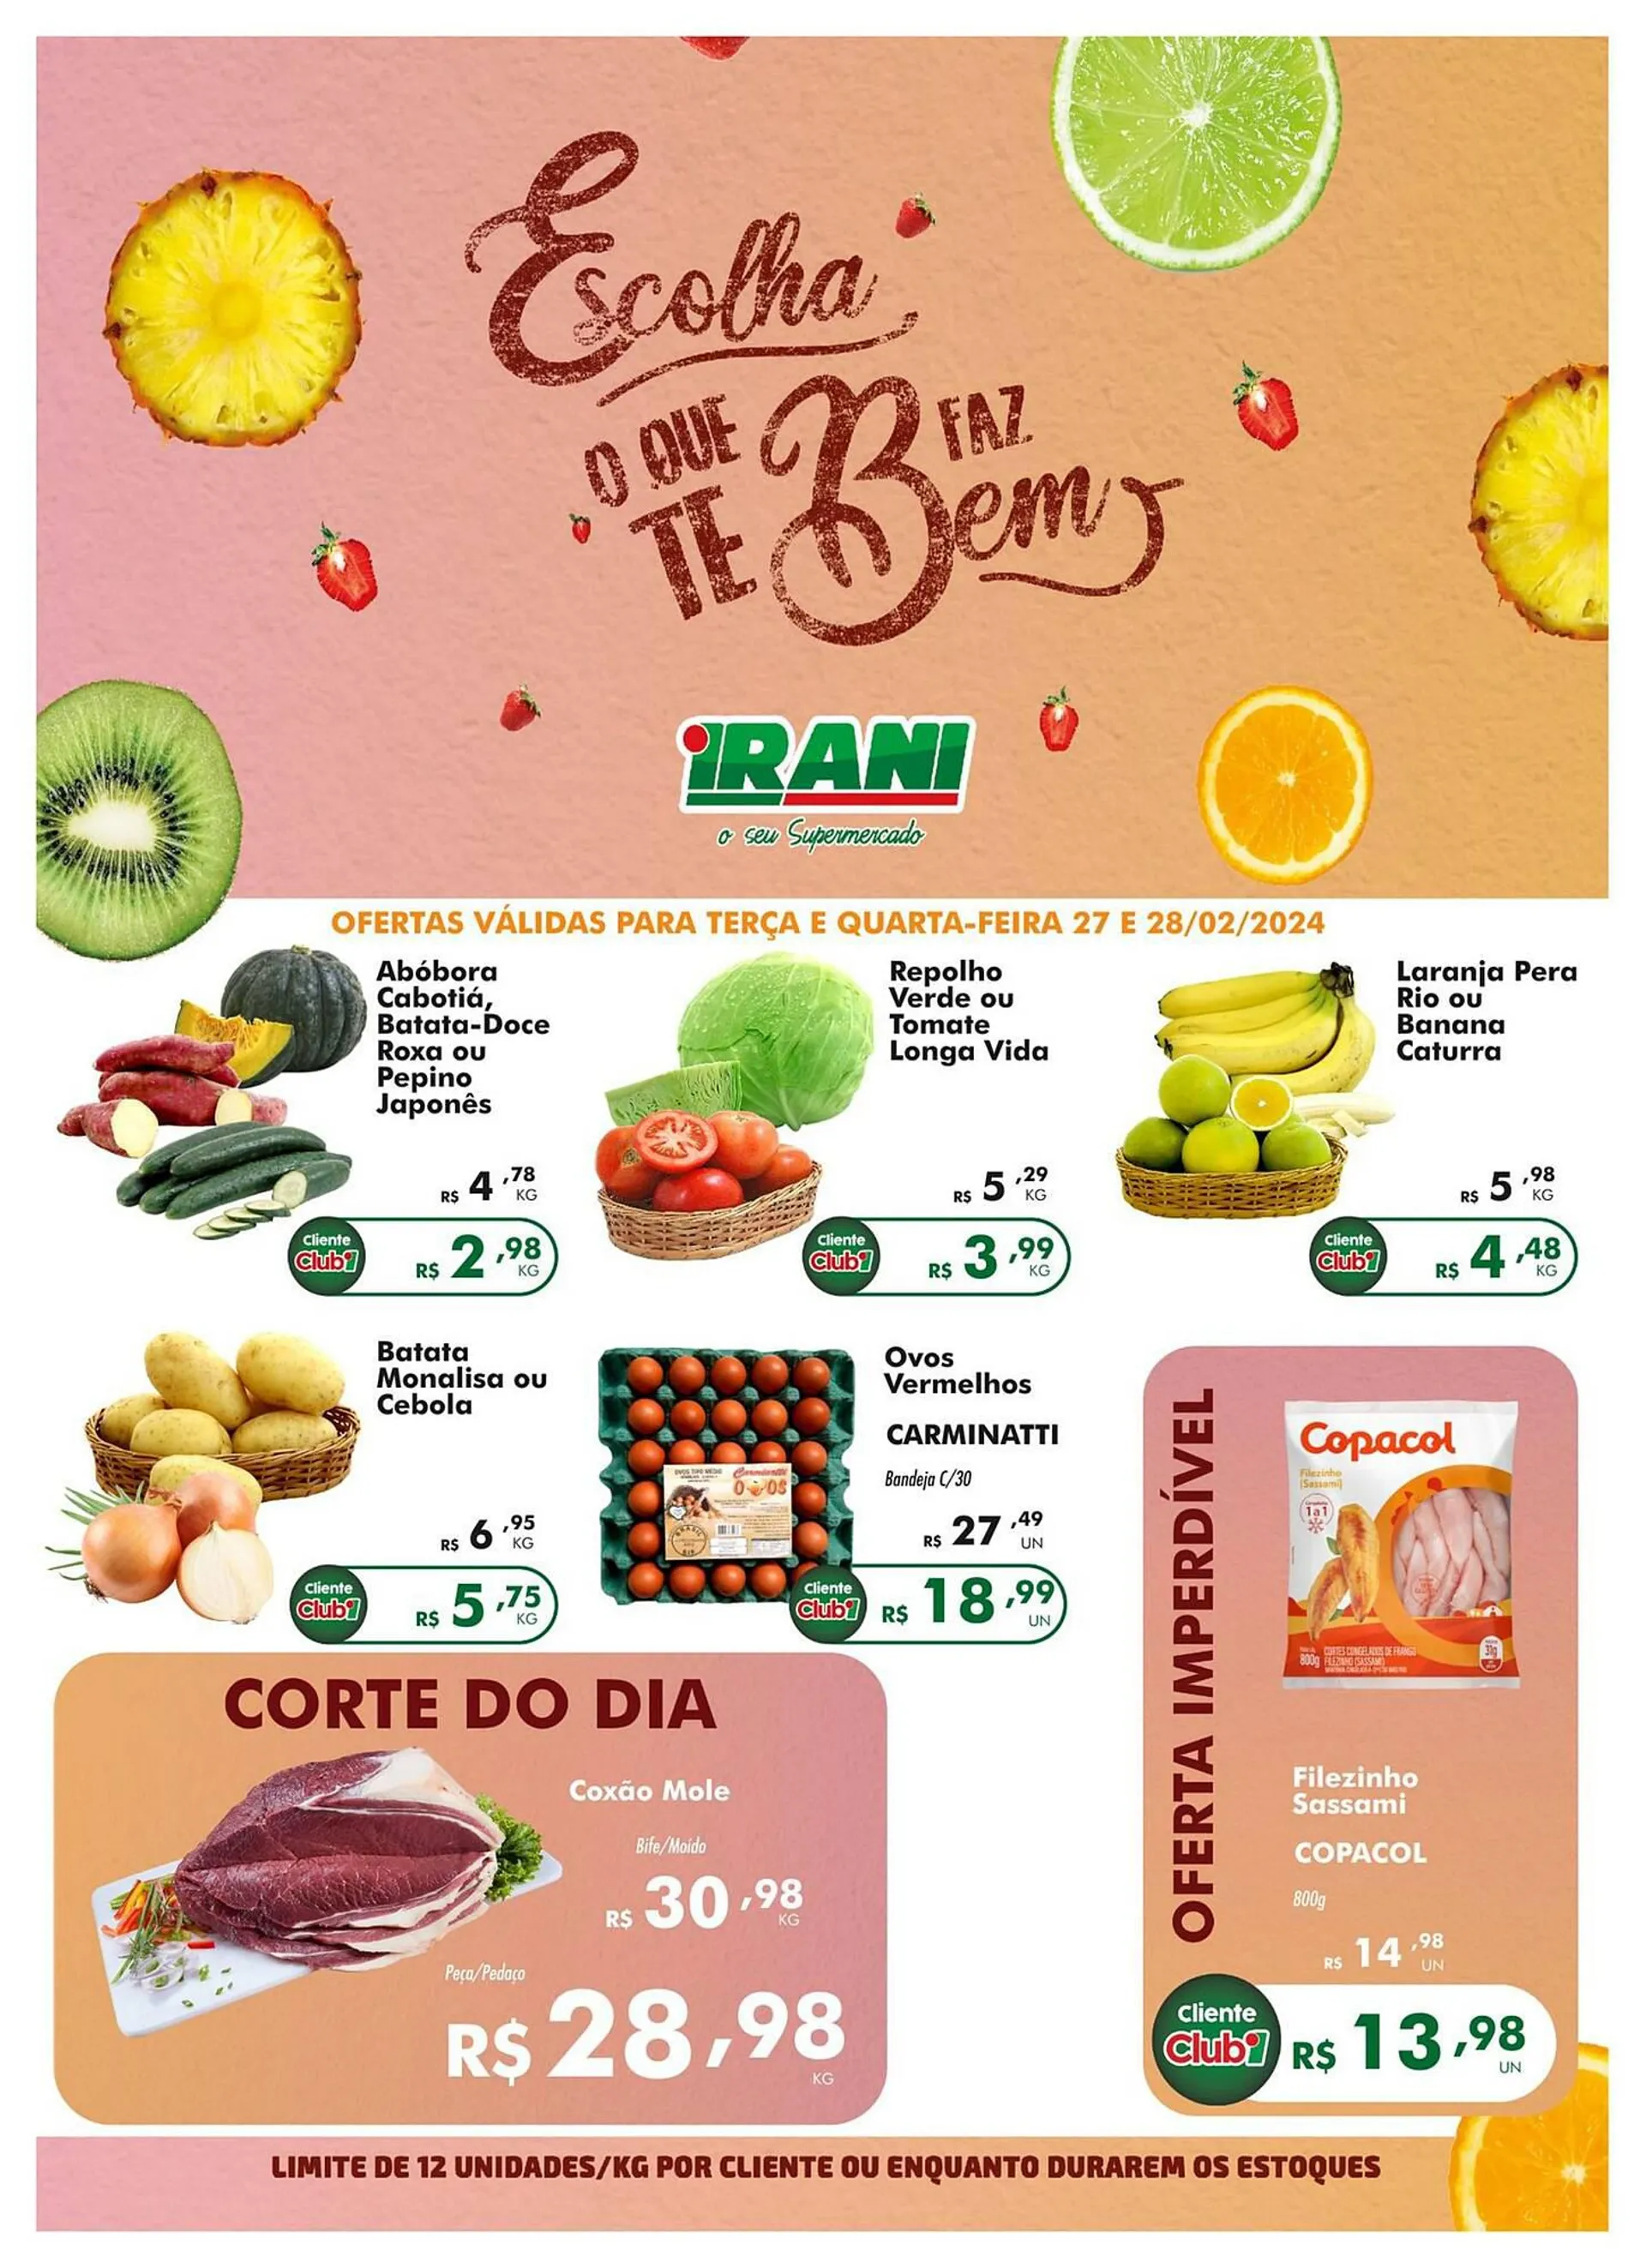 Encarte de Catálogo Irani Supermercados 27 de fevereiro até 28 de fevereiro 2024 - Pagina 